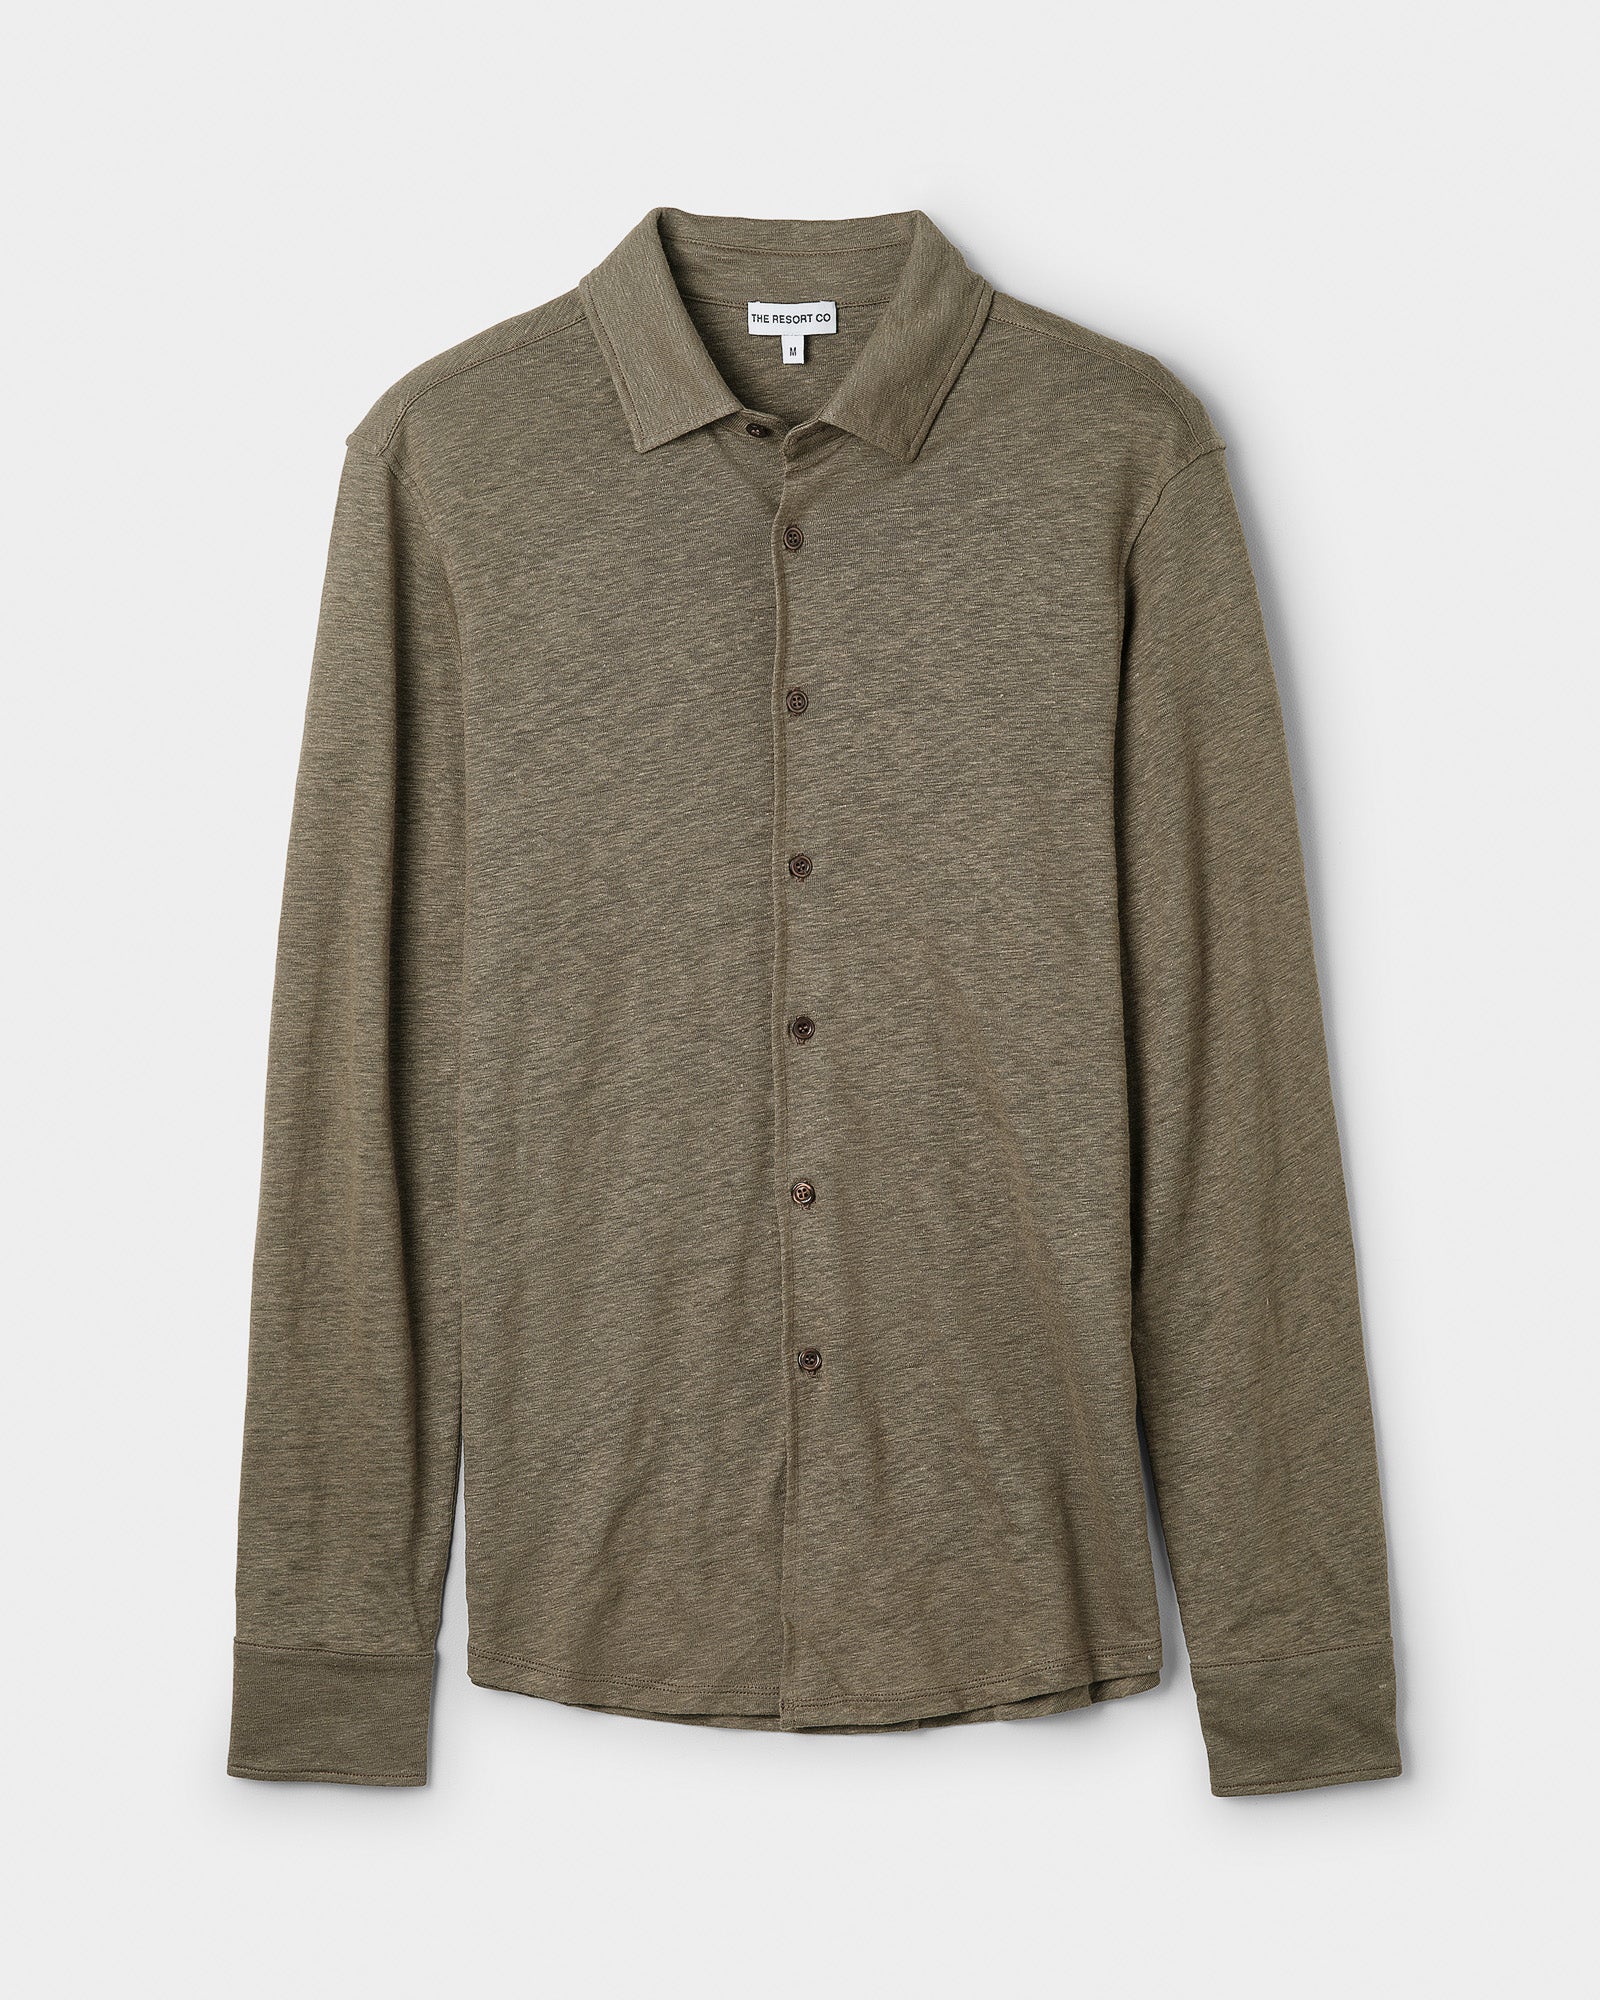 Linen Jersey Shirt Khaki - THE RESORT CO